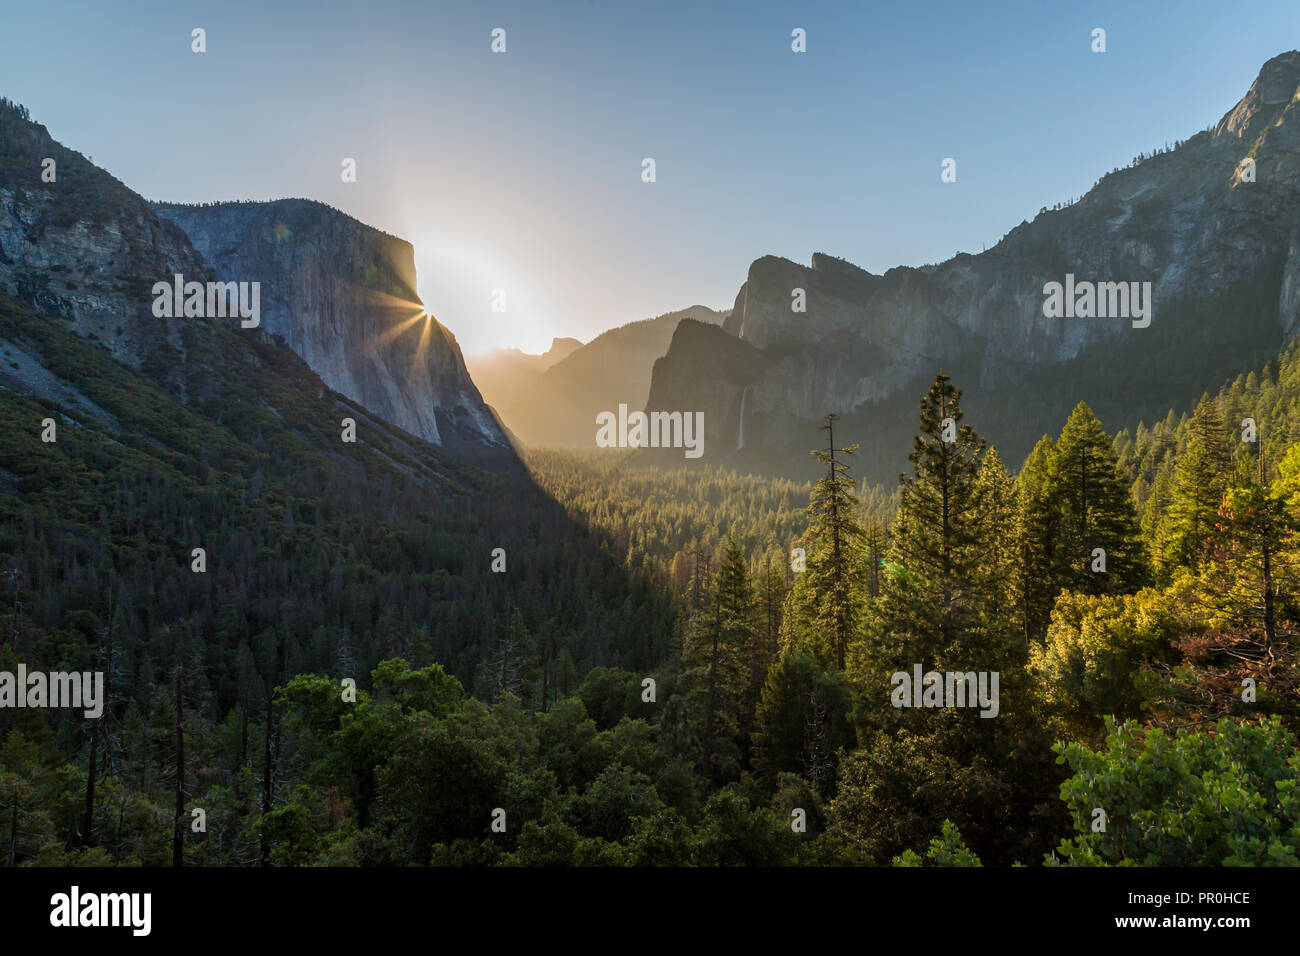 Morgen Blick auf Sun peaking runde El Capitan, Yosemite Nationalpark, UNESCO-Weltkulturerbe, Kalifornien, Vereinigte Staaten von Amerika, Nordamerika Stockfoto